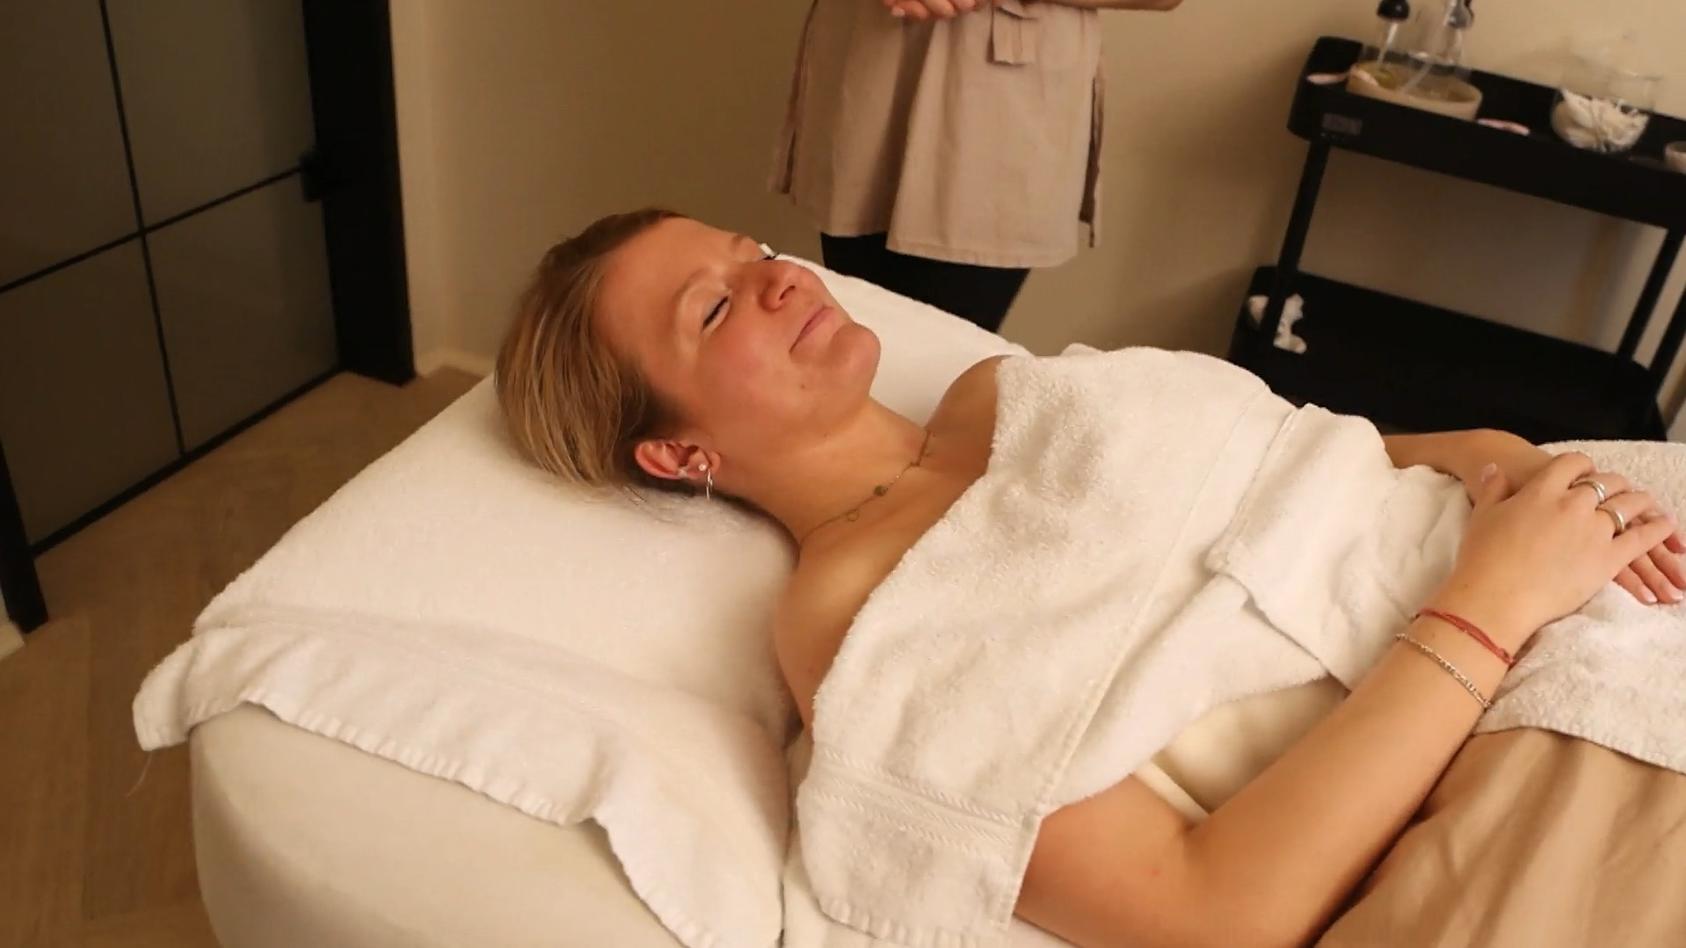 bringt-das-wirklich-was-reporterin-testet-lymph-massage